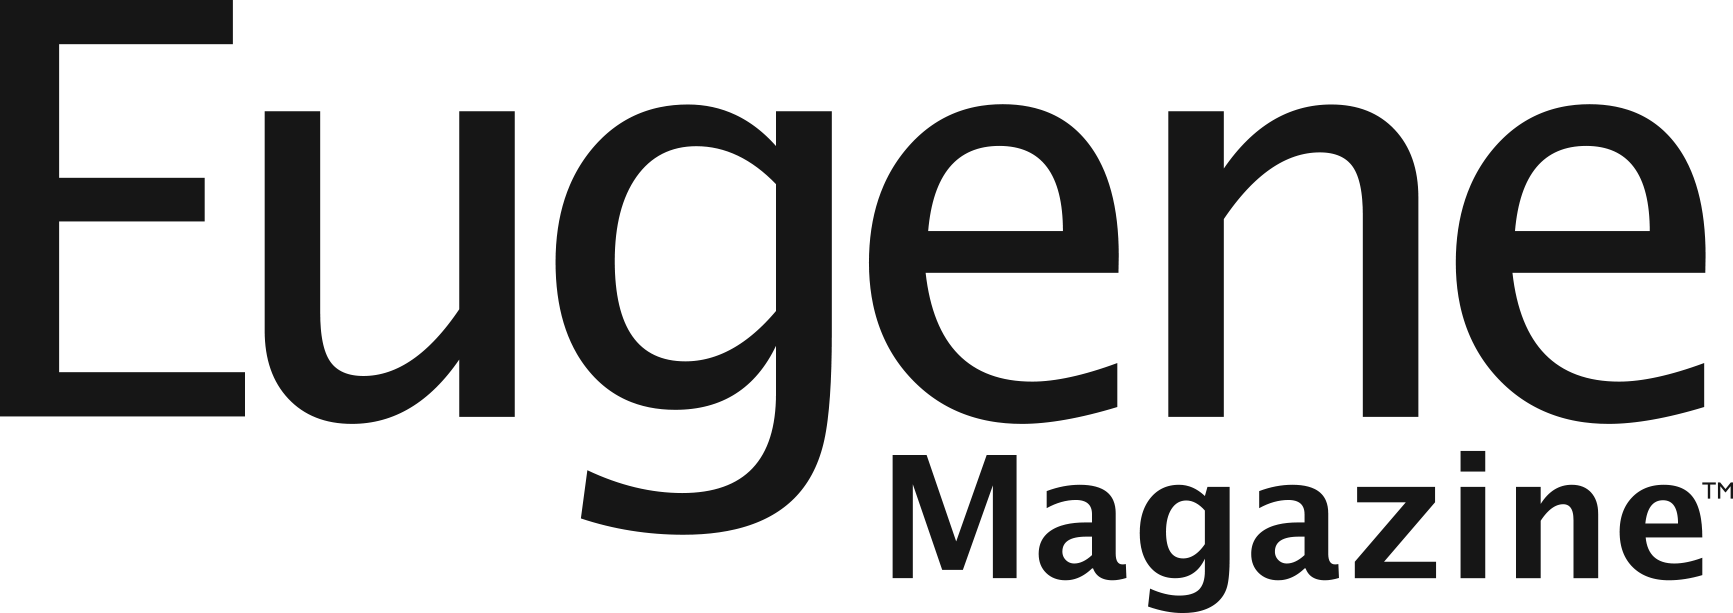 eugene magazine logo